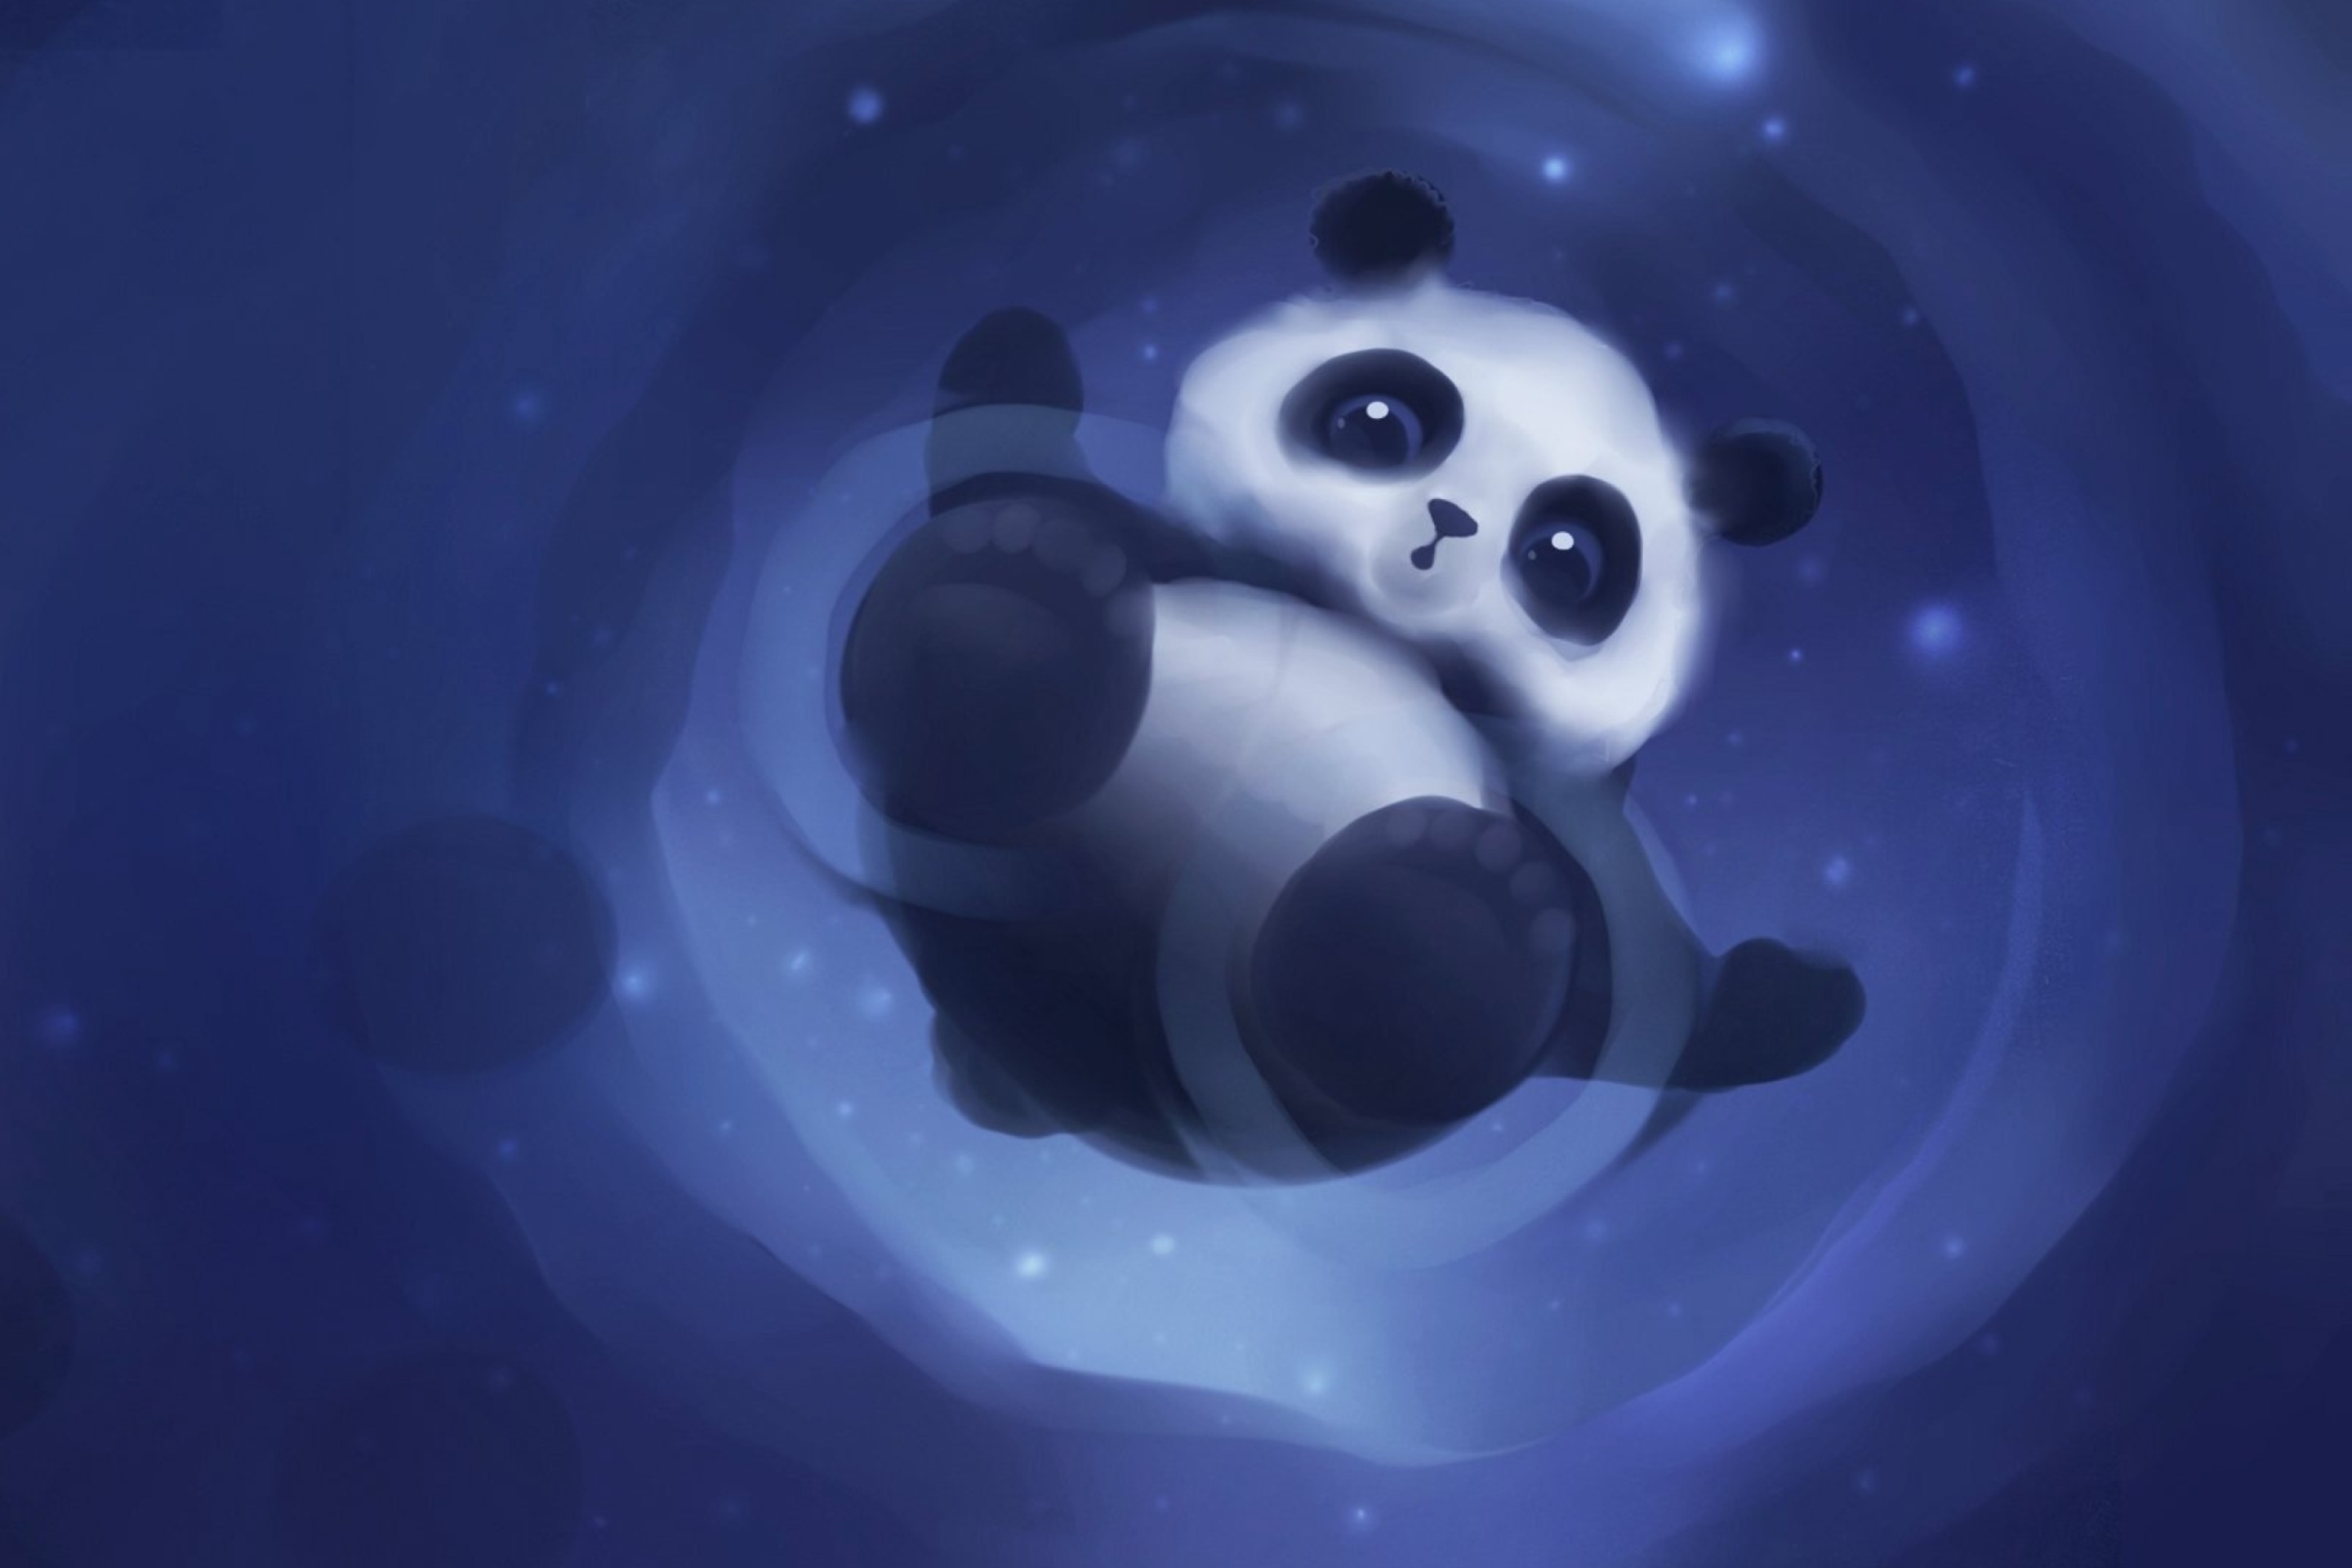 Cute Panda wallpaper 2880x1920